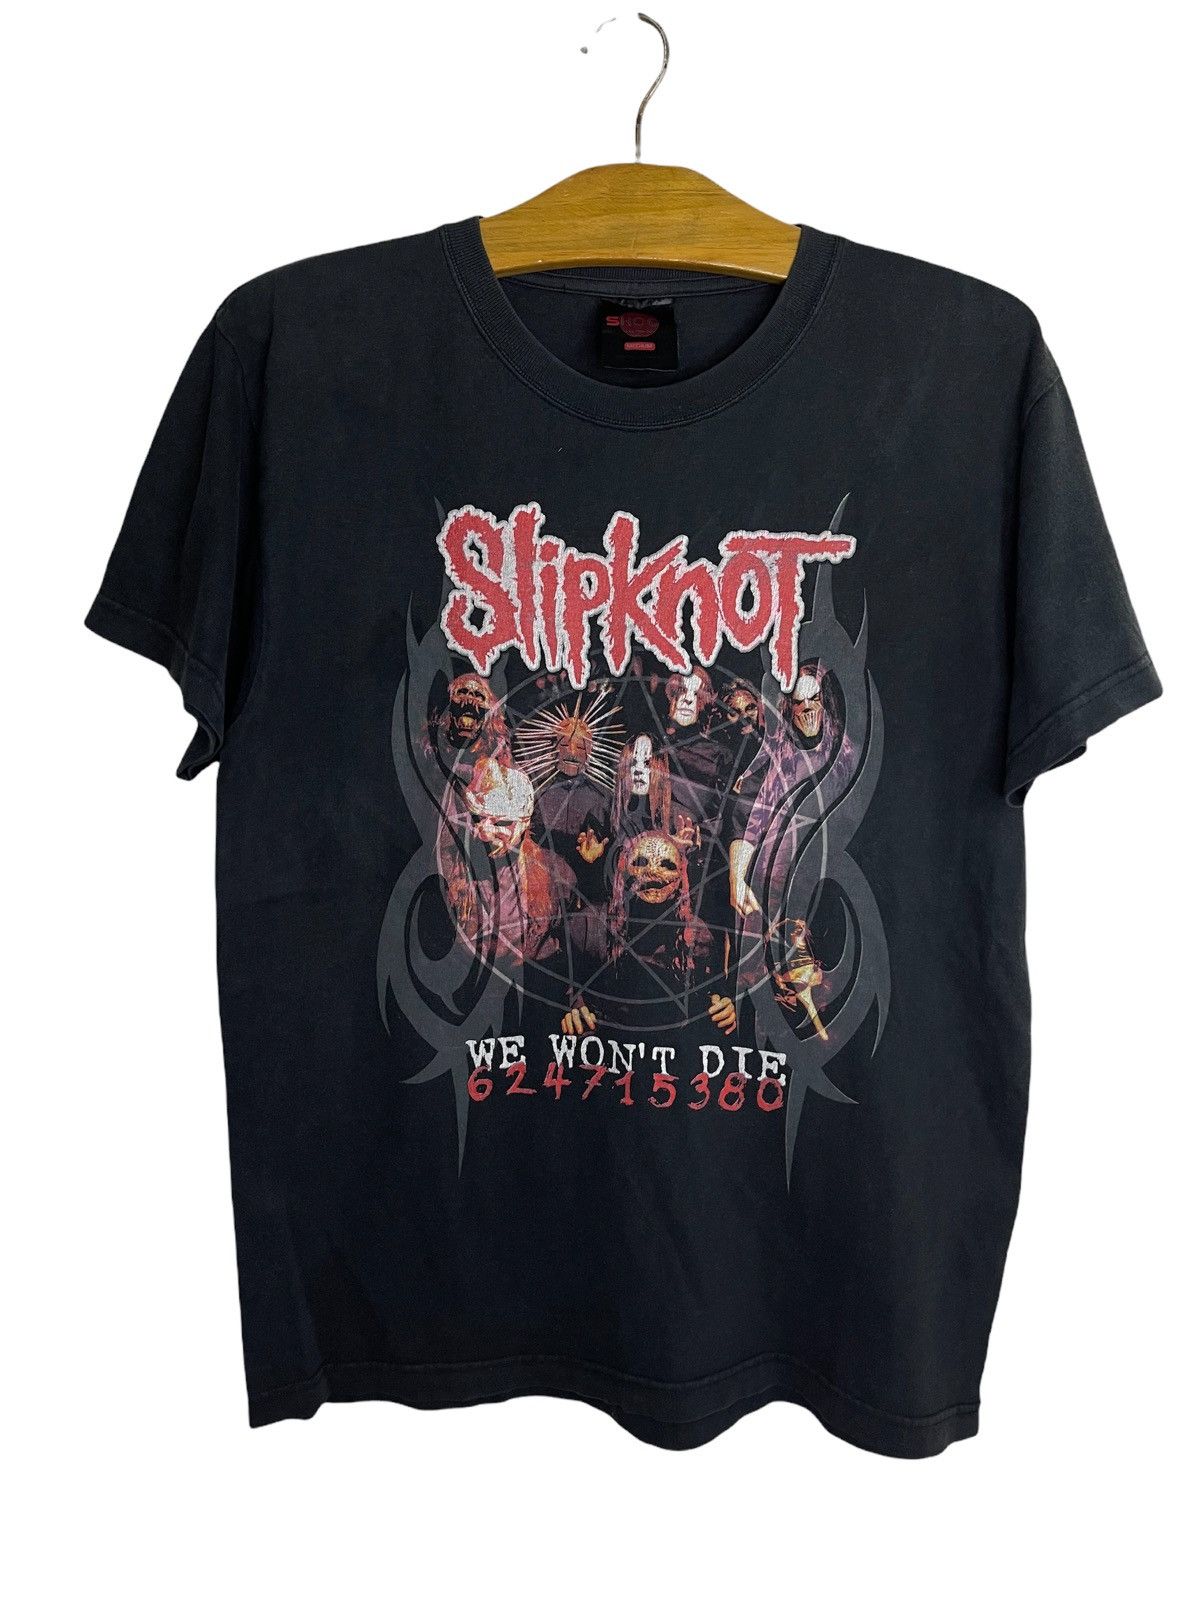 Vintage Vintage Slipknot t shirt | Grailed